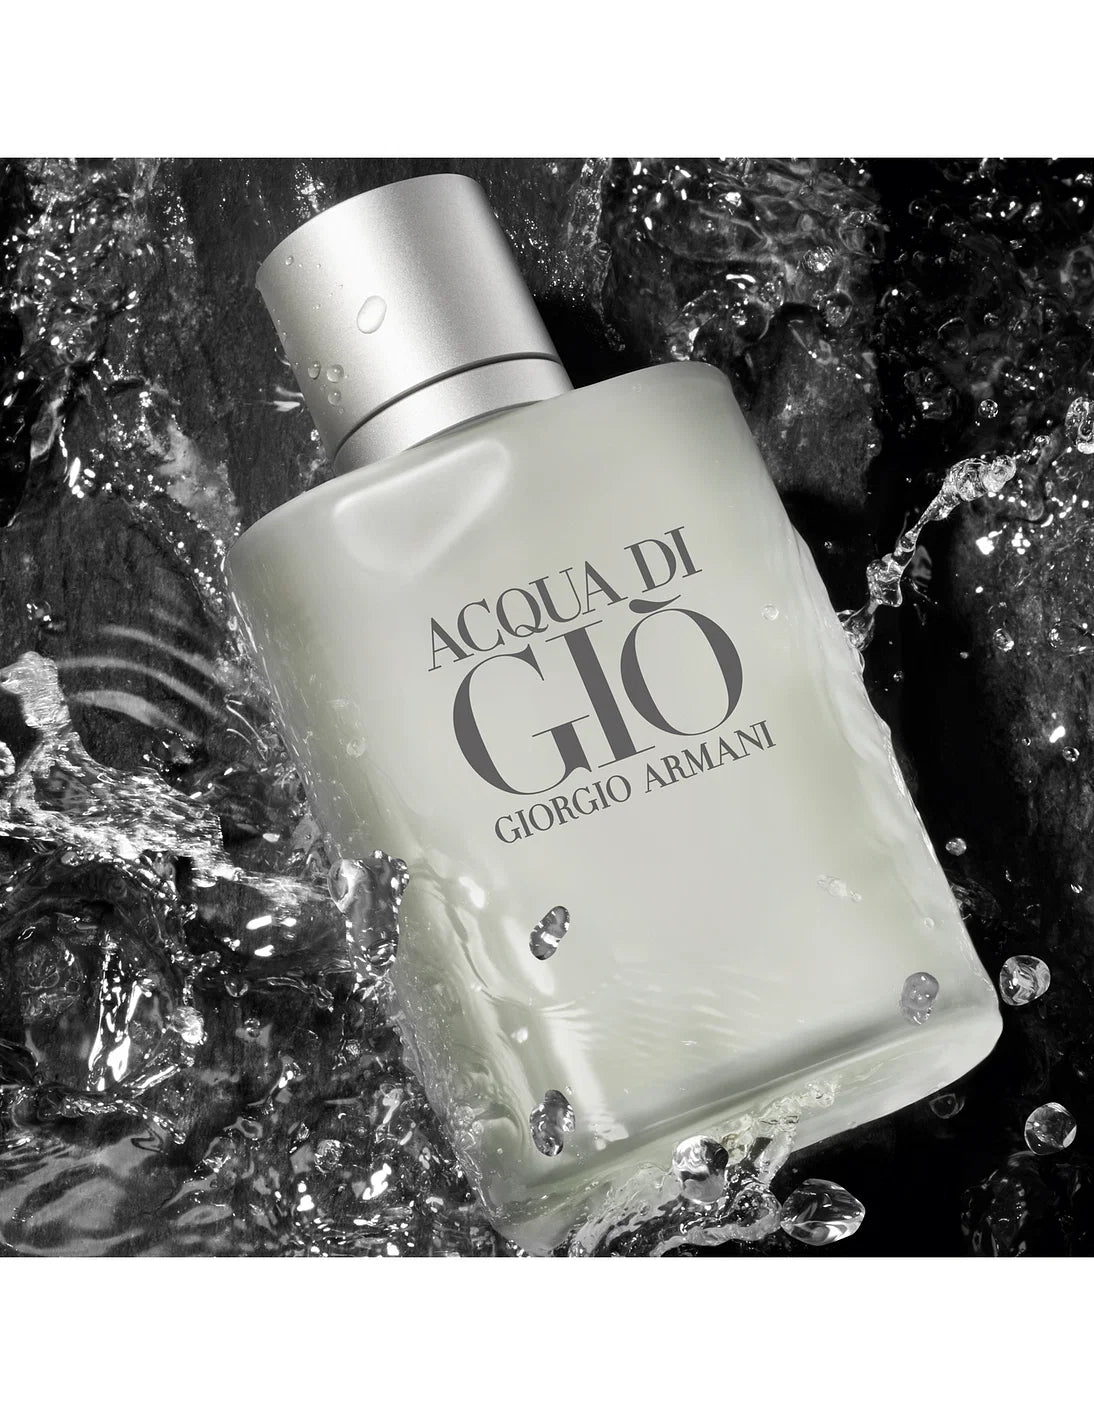 Giorgio Armani Acqua Di Gio EDT Spray For Men - Perfumora